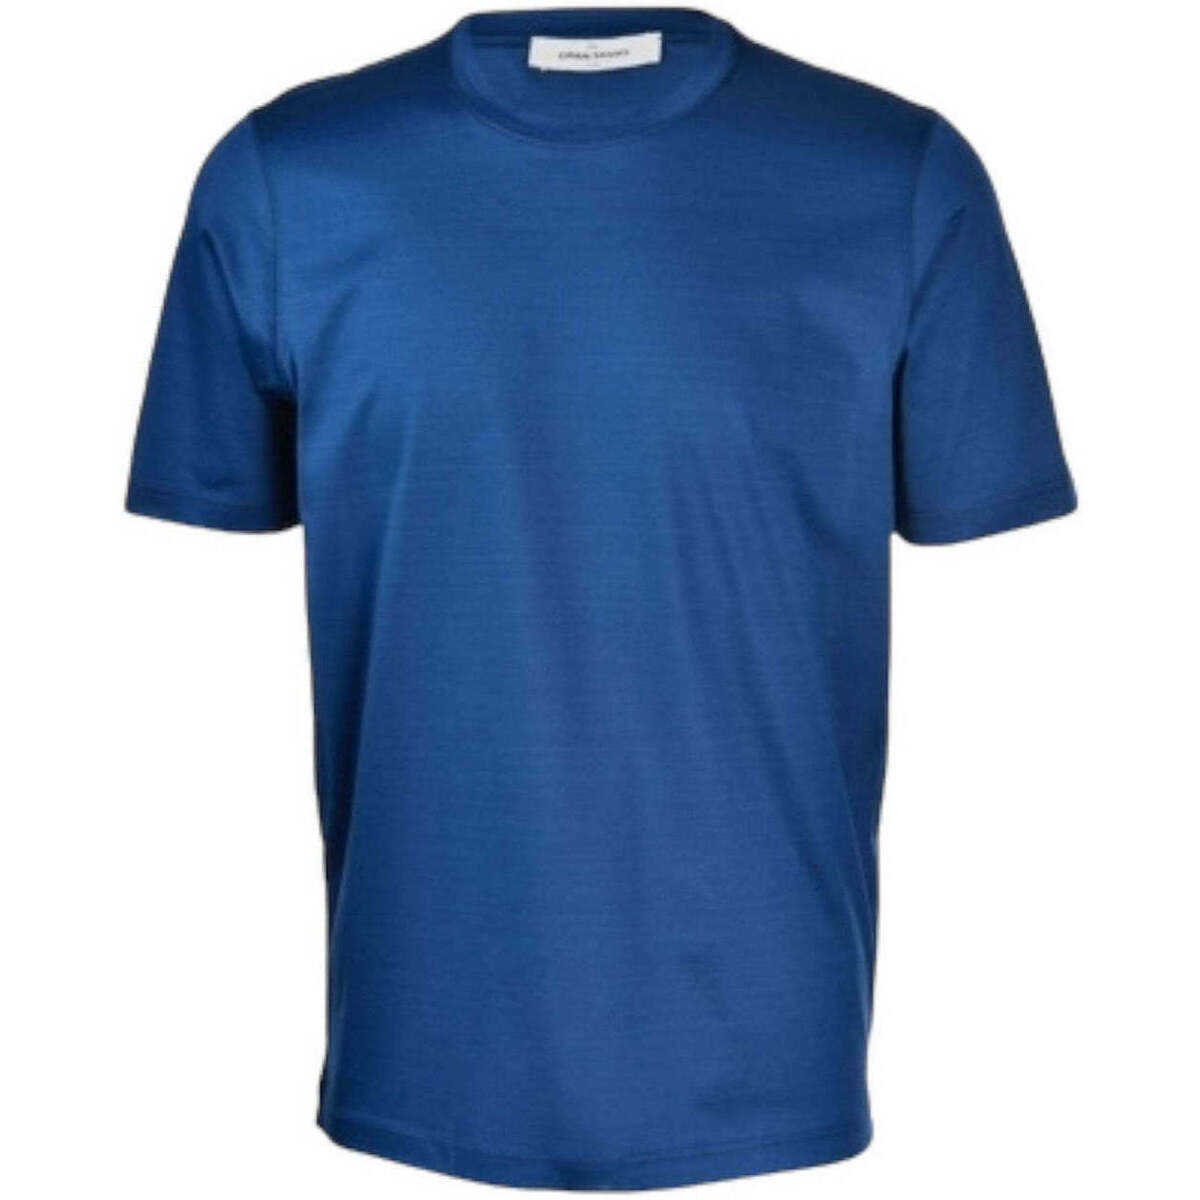 textil Hombre Tops y Camisetas Gran Sasso  Azul